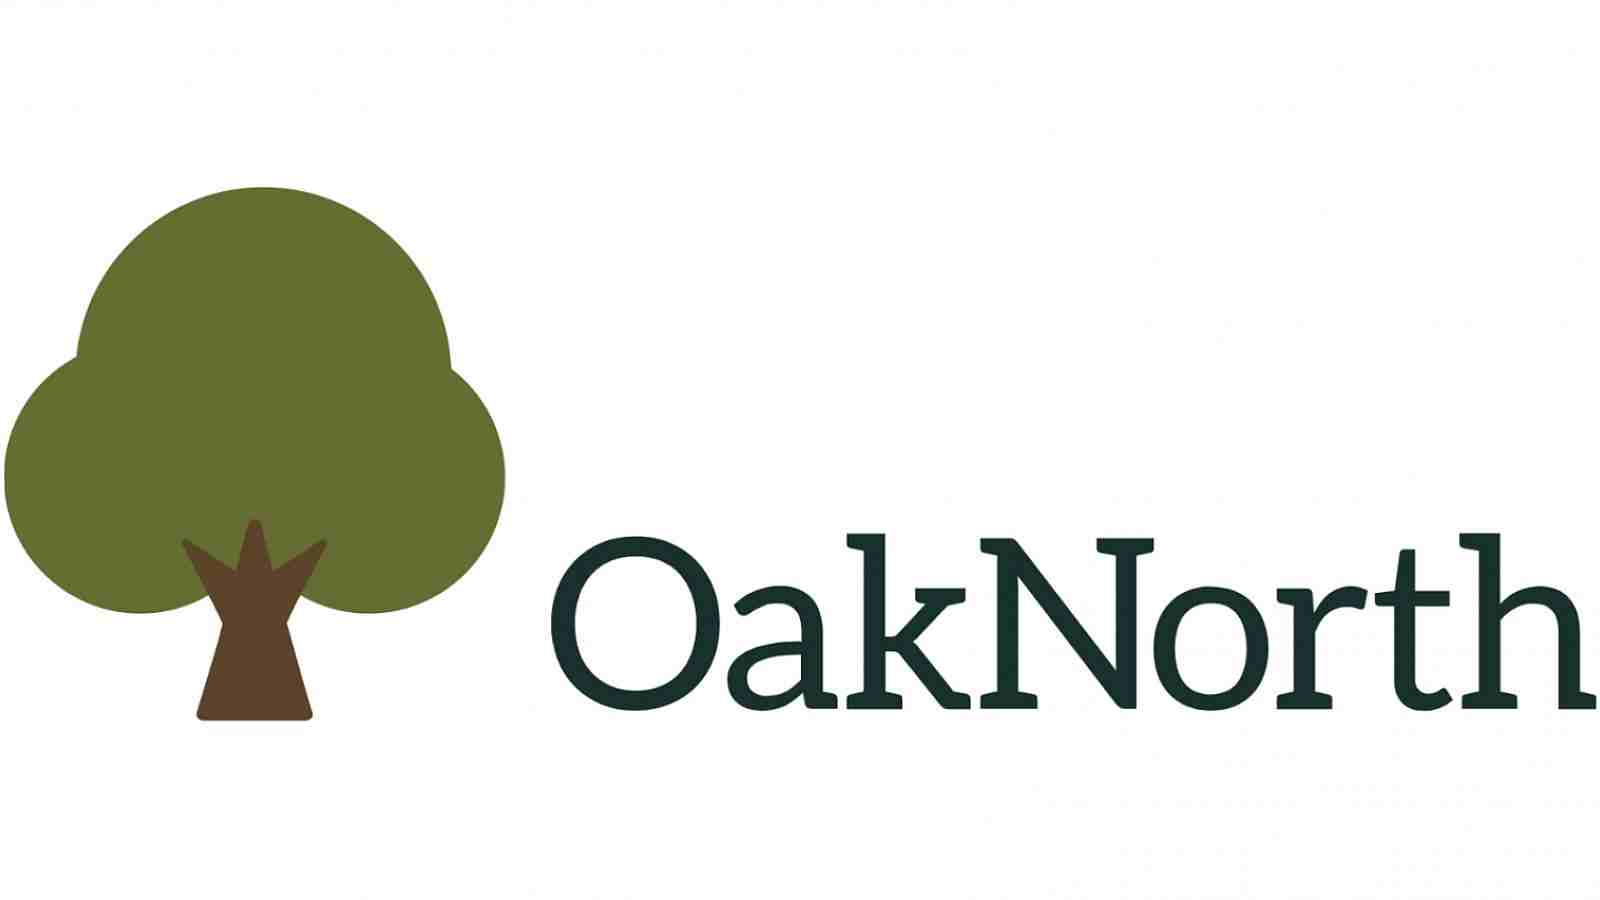 My Startup: OakNorth Bank